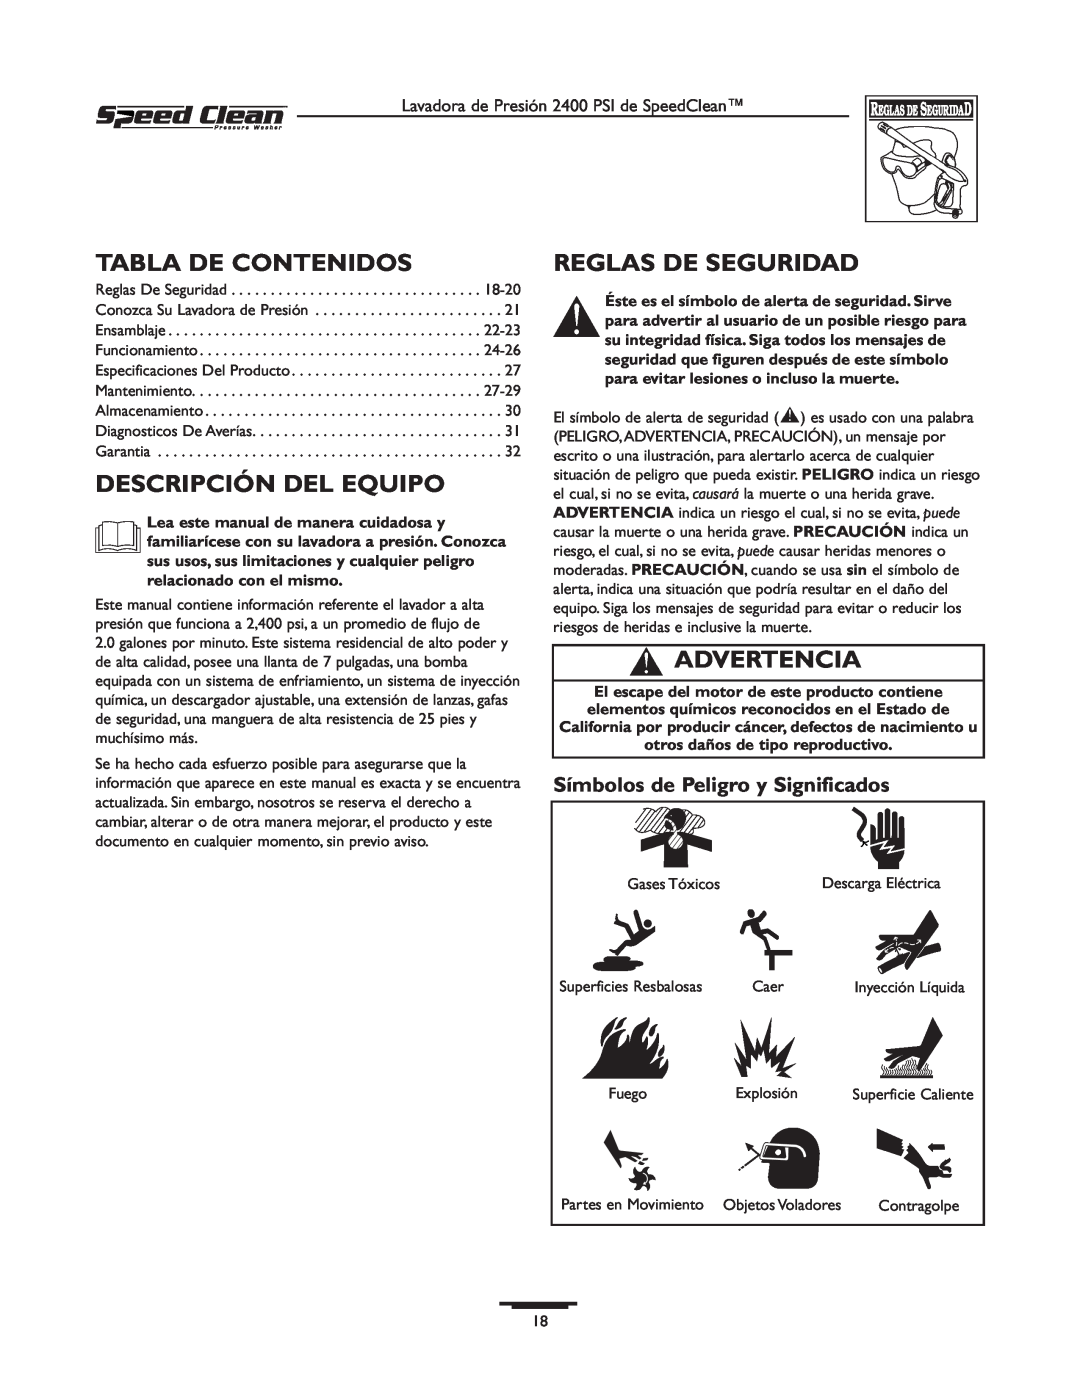 Briggs & Stratton 020227-0 owner manual Tabla De Contenidos, Descripción Del Equipo, Reglas De Seguridad, Advertencia 